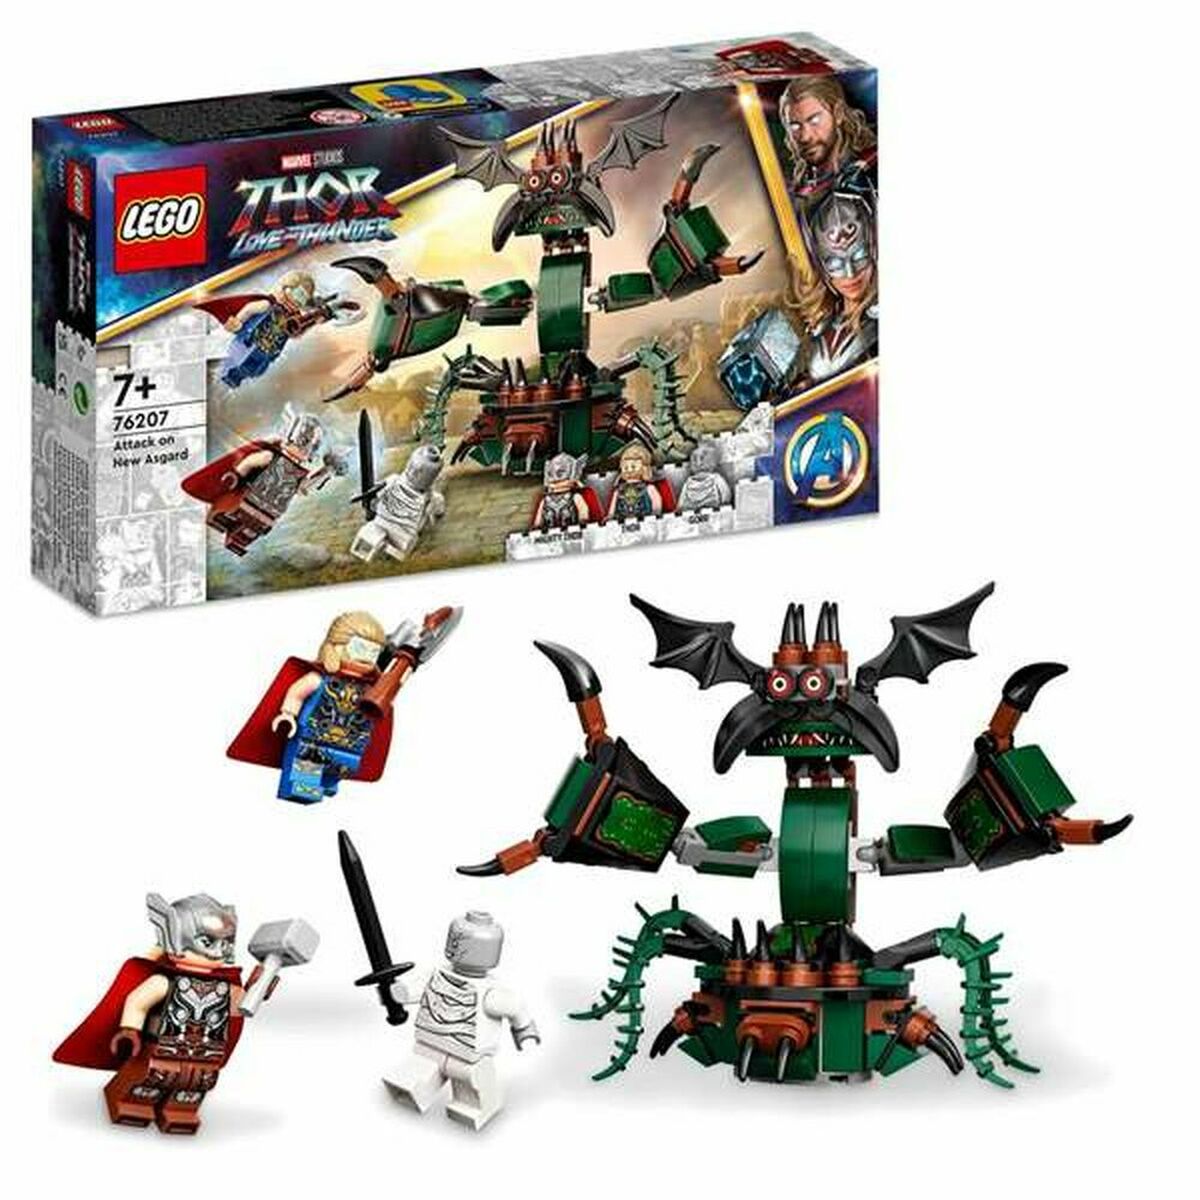 Konstruktionsuppsättning Lego Thor Love and Thunder: Attack on New Asgard